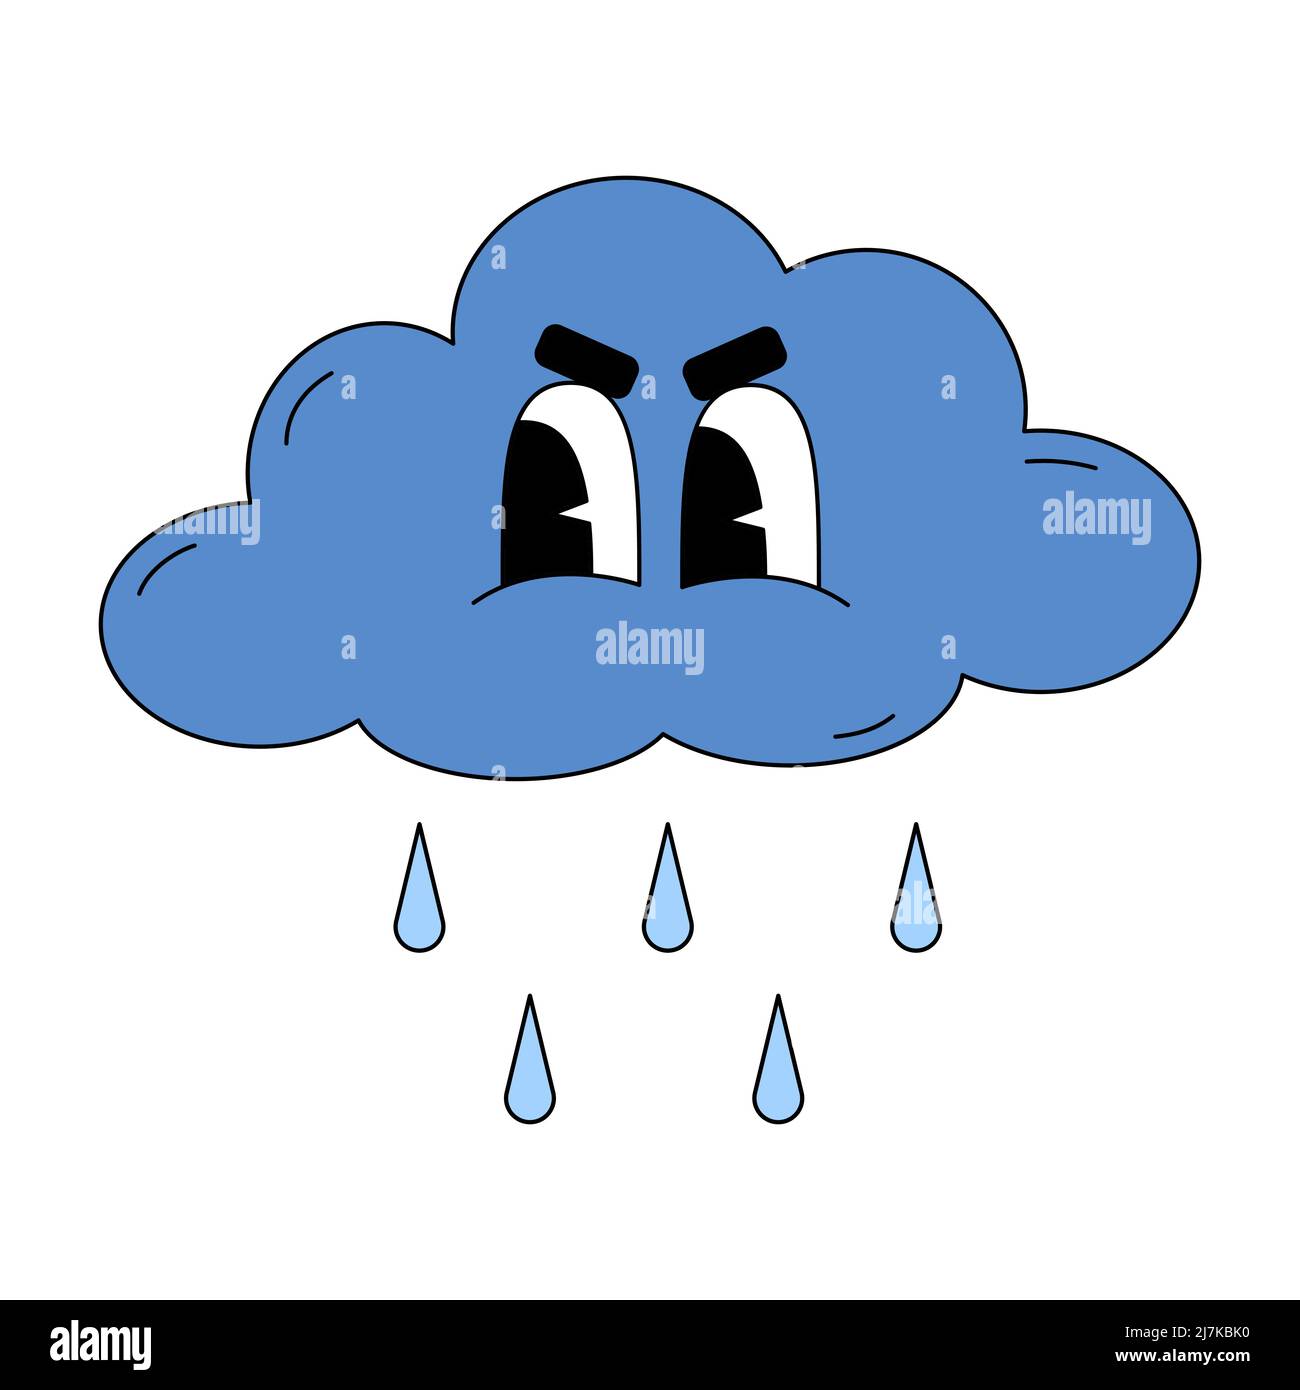 Le nuage de tempête avec gouttes de pluie dans le style traditionnel de dessin animé. Illustration vectorielle isolée sur fond blanc. Émoticone sombre pour les réseaux sociaux, s Illustration de Vecteur